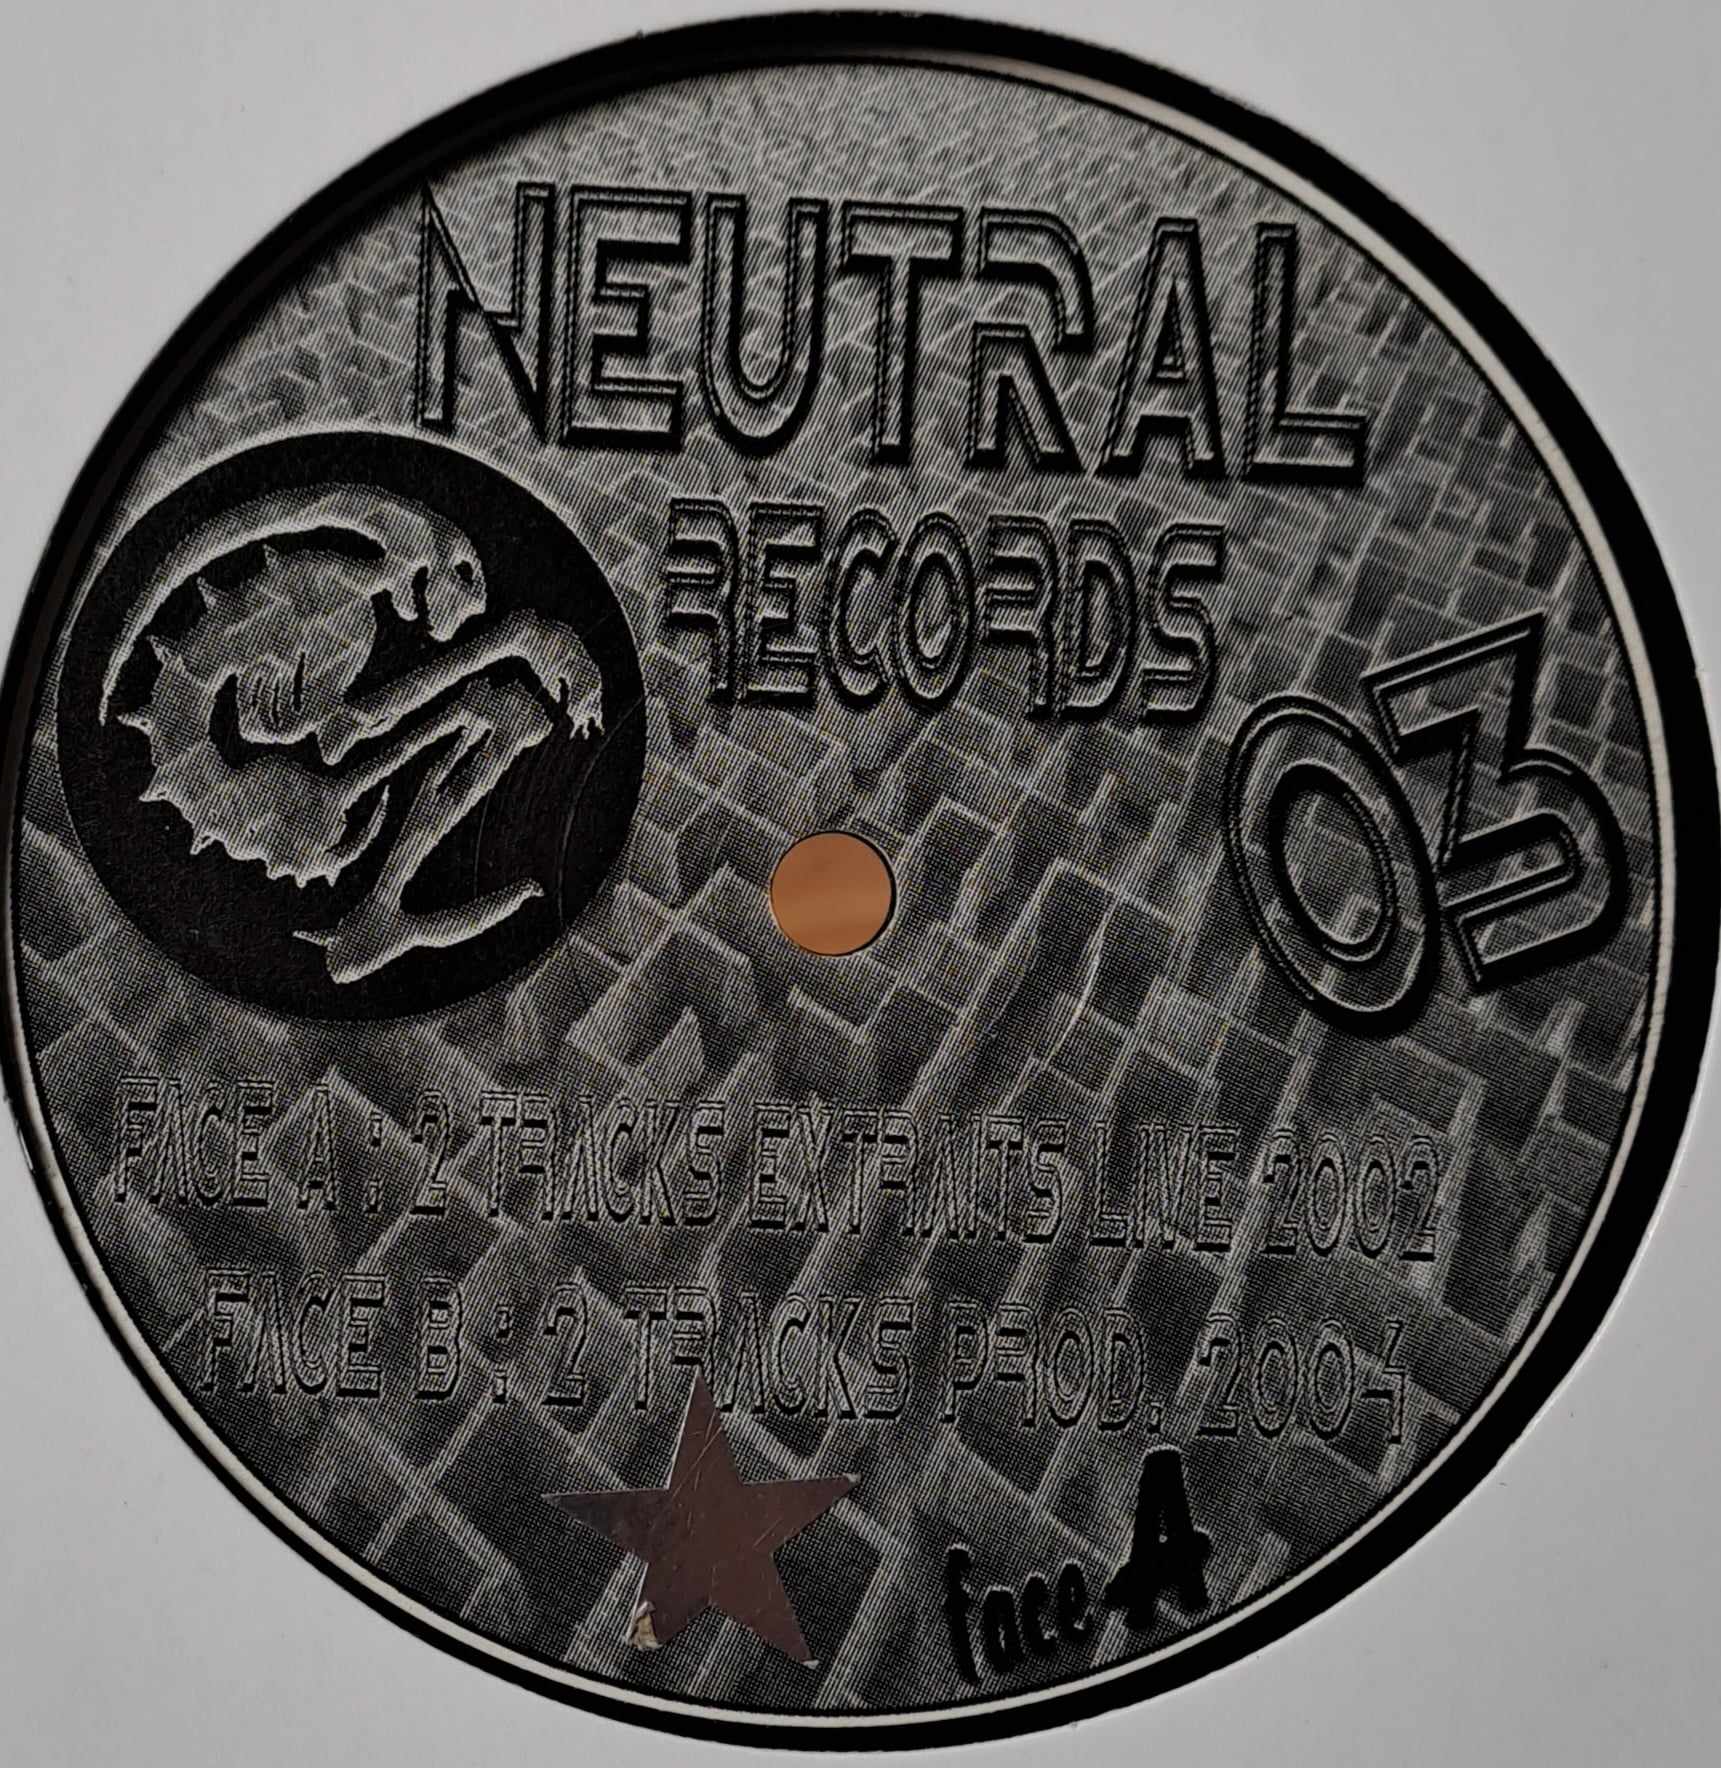 Neutral 03 - vinyle freetekno